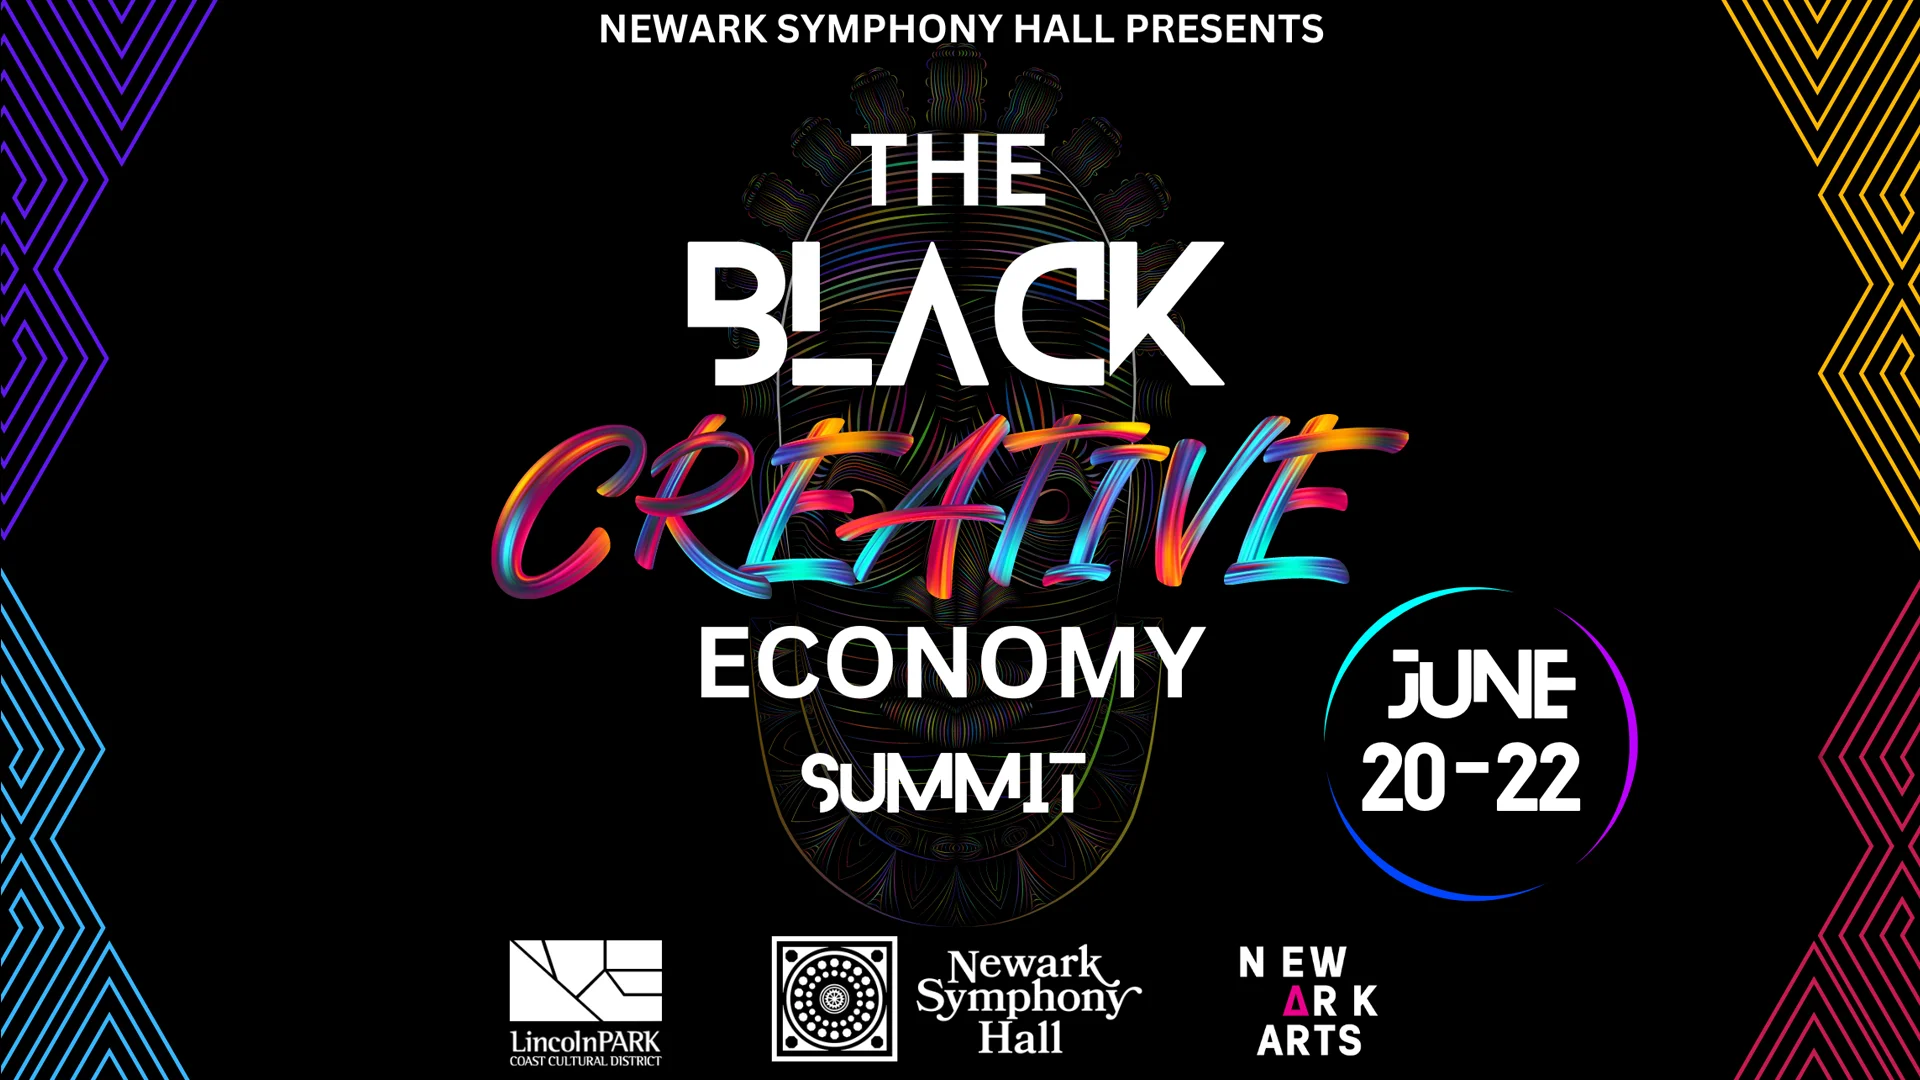 The Black Creative Economy Summit